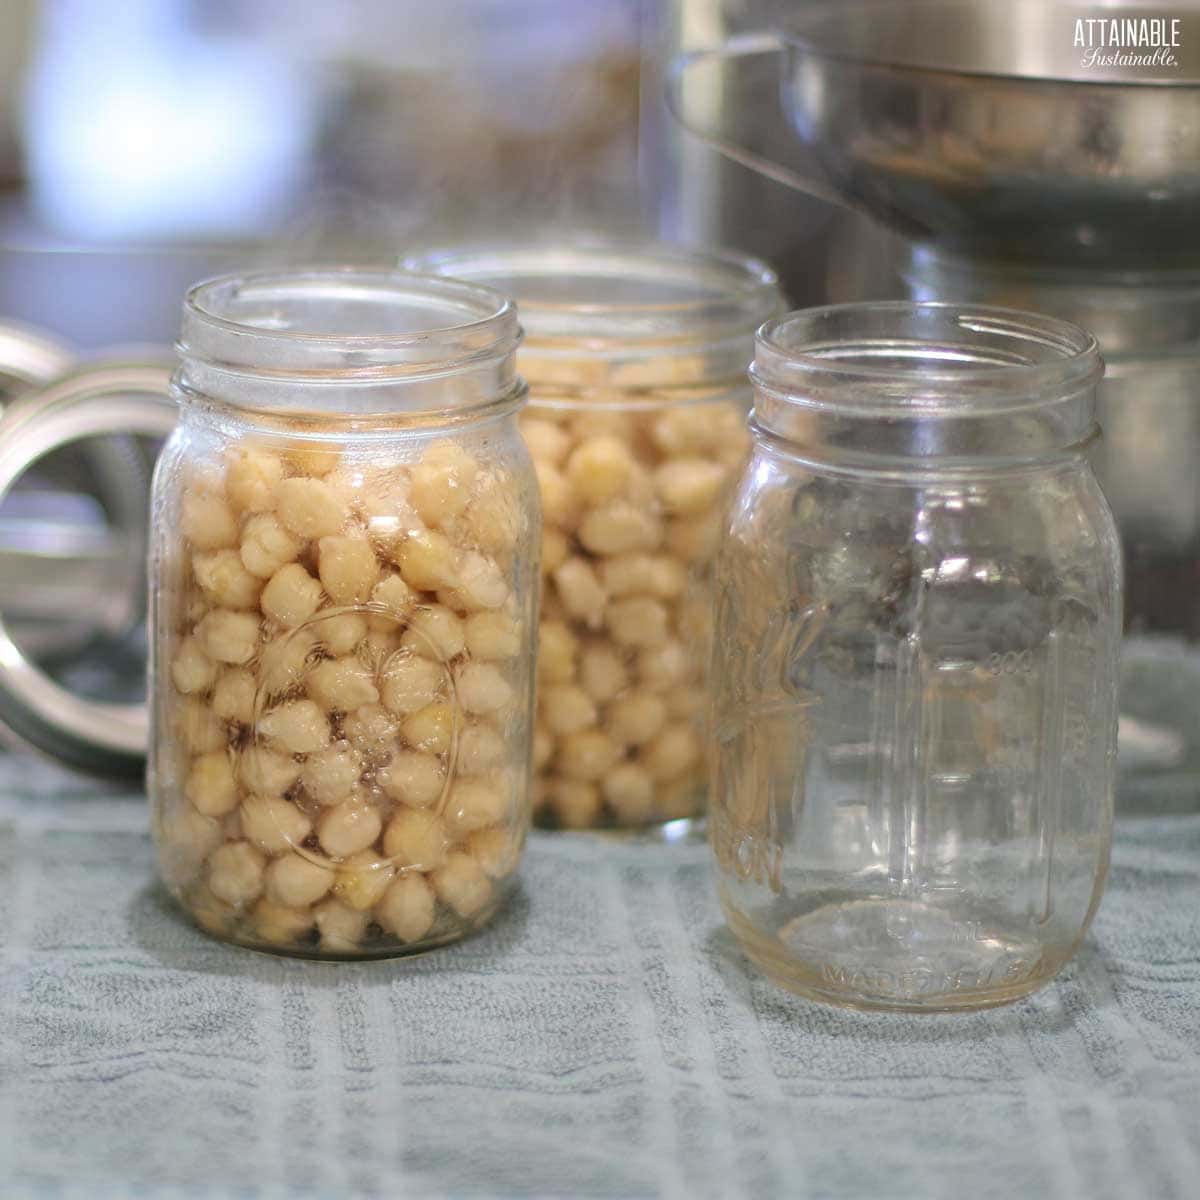 beans in jars.